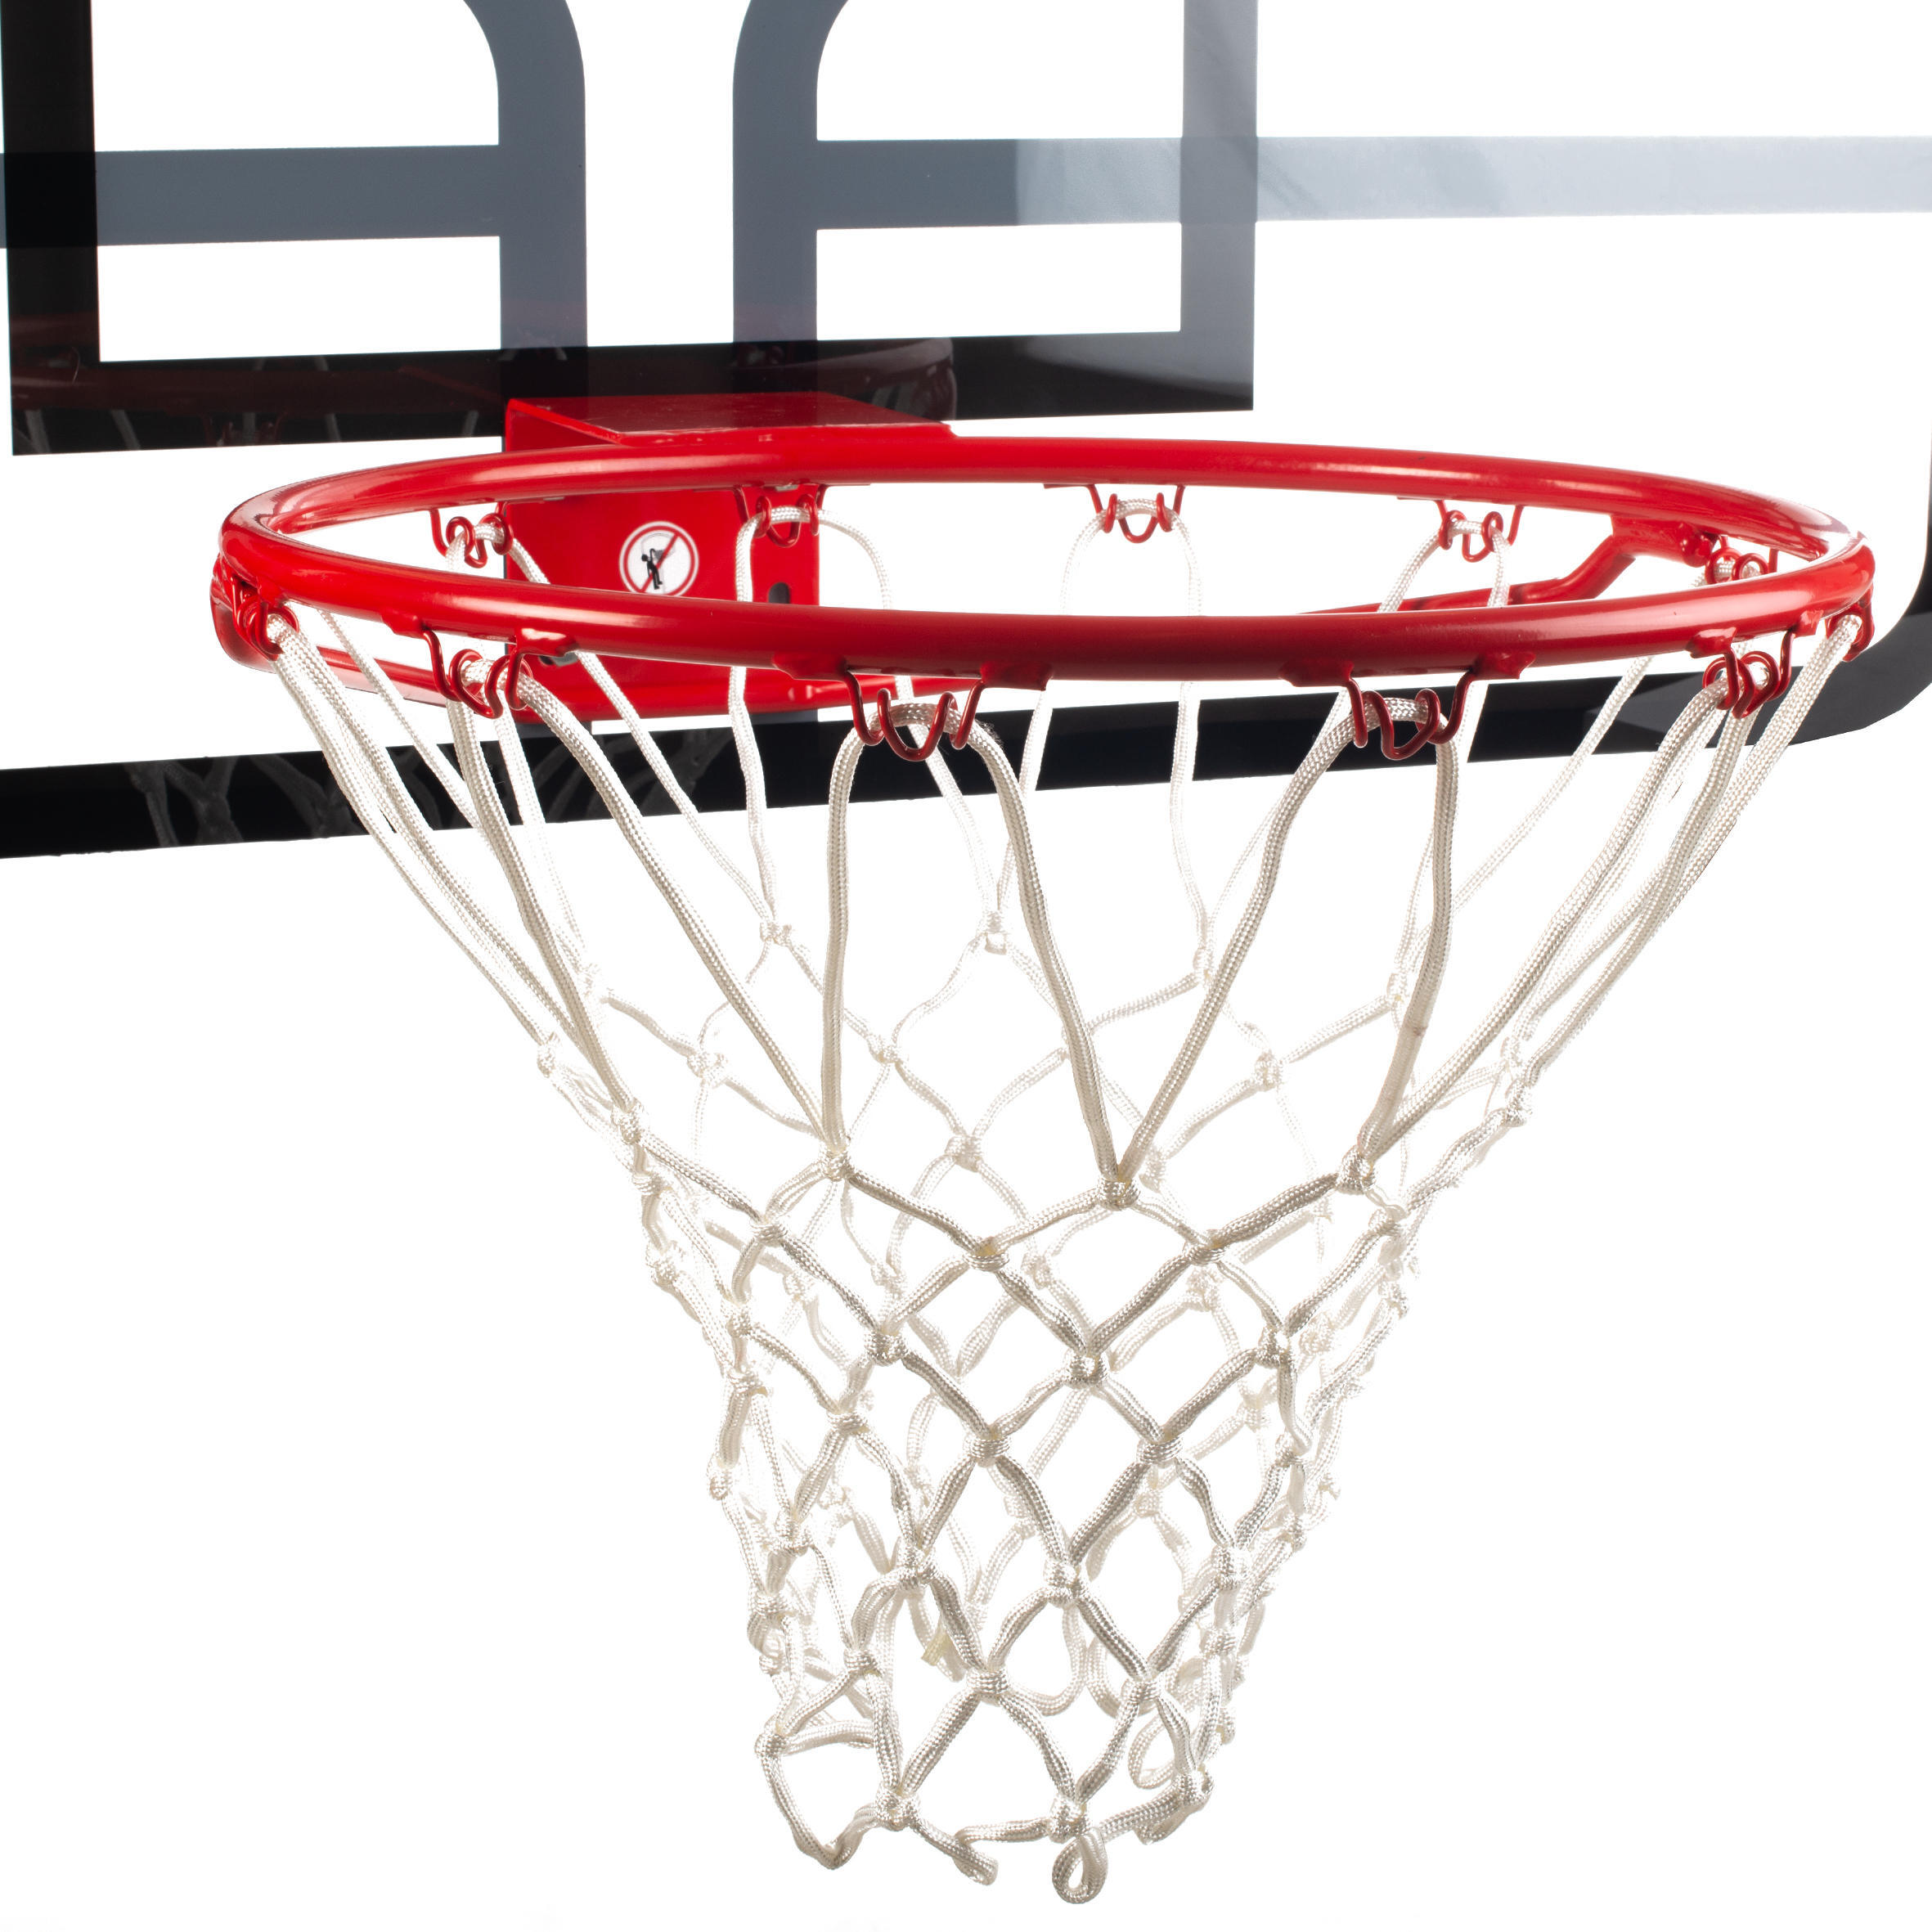 SB700 Kids'/Adult Wall-Mounted Basketball Hoop. Quality backboard. 3/4